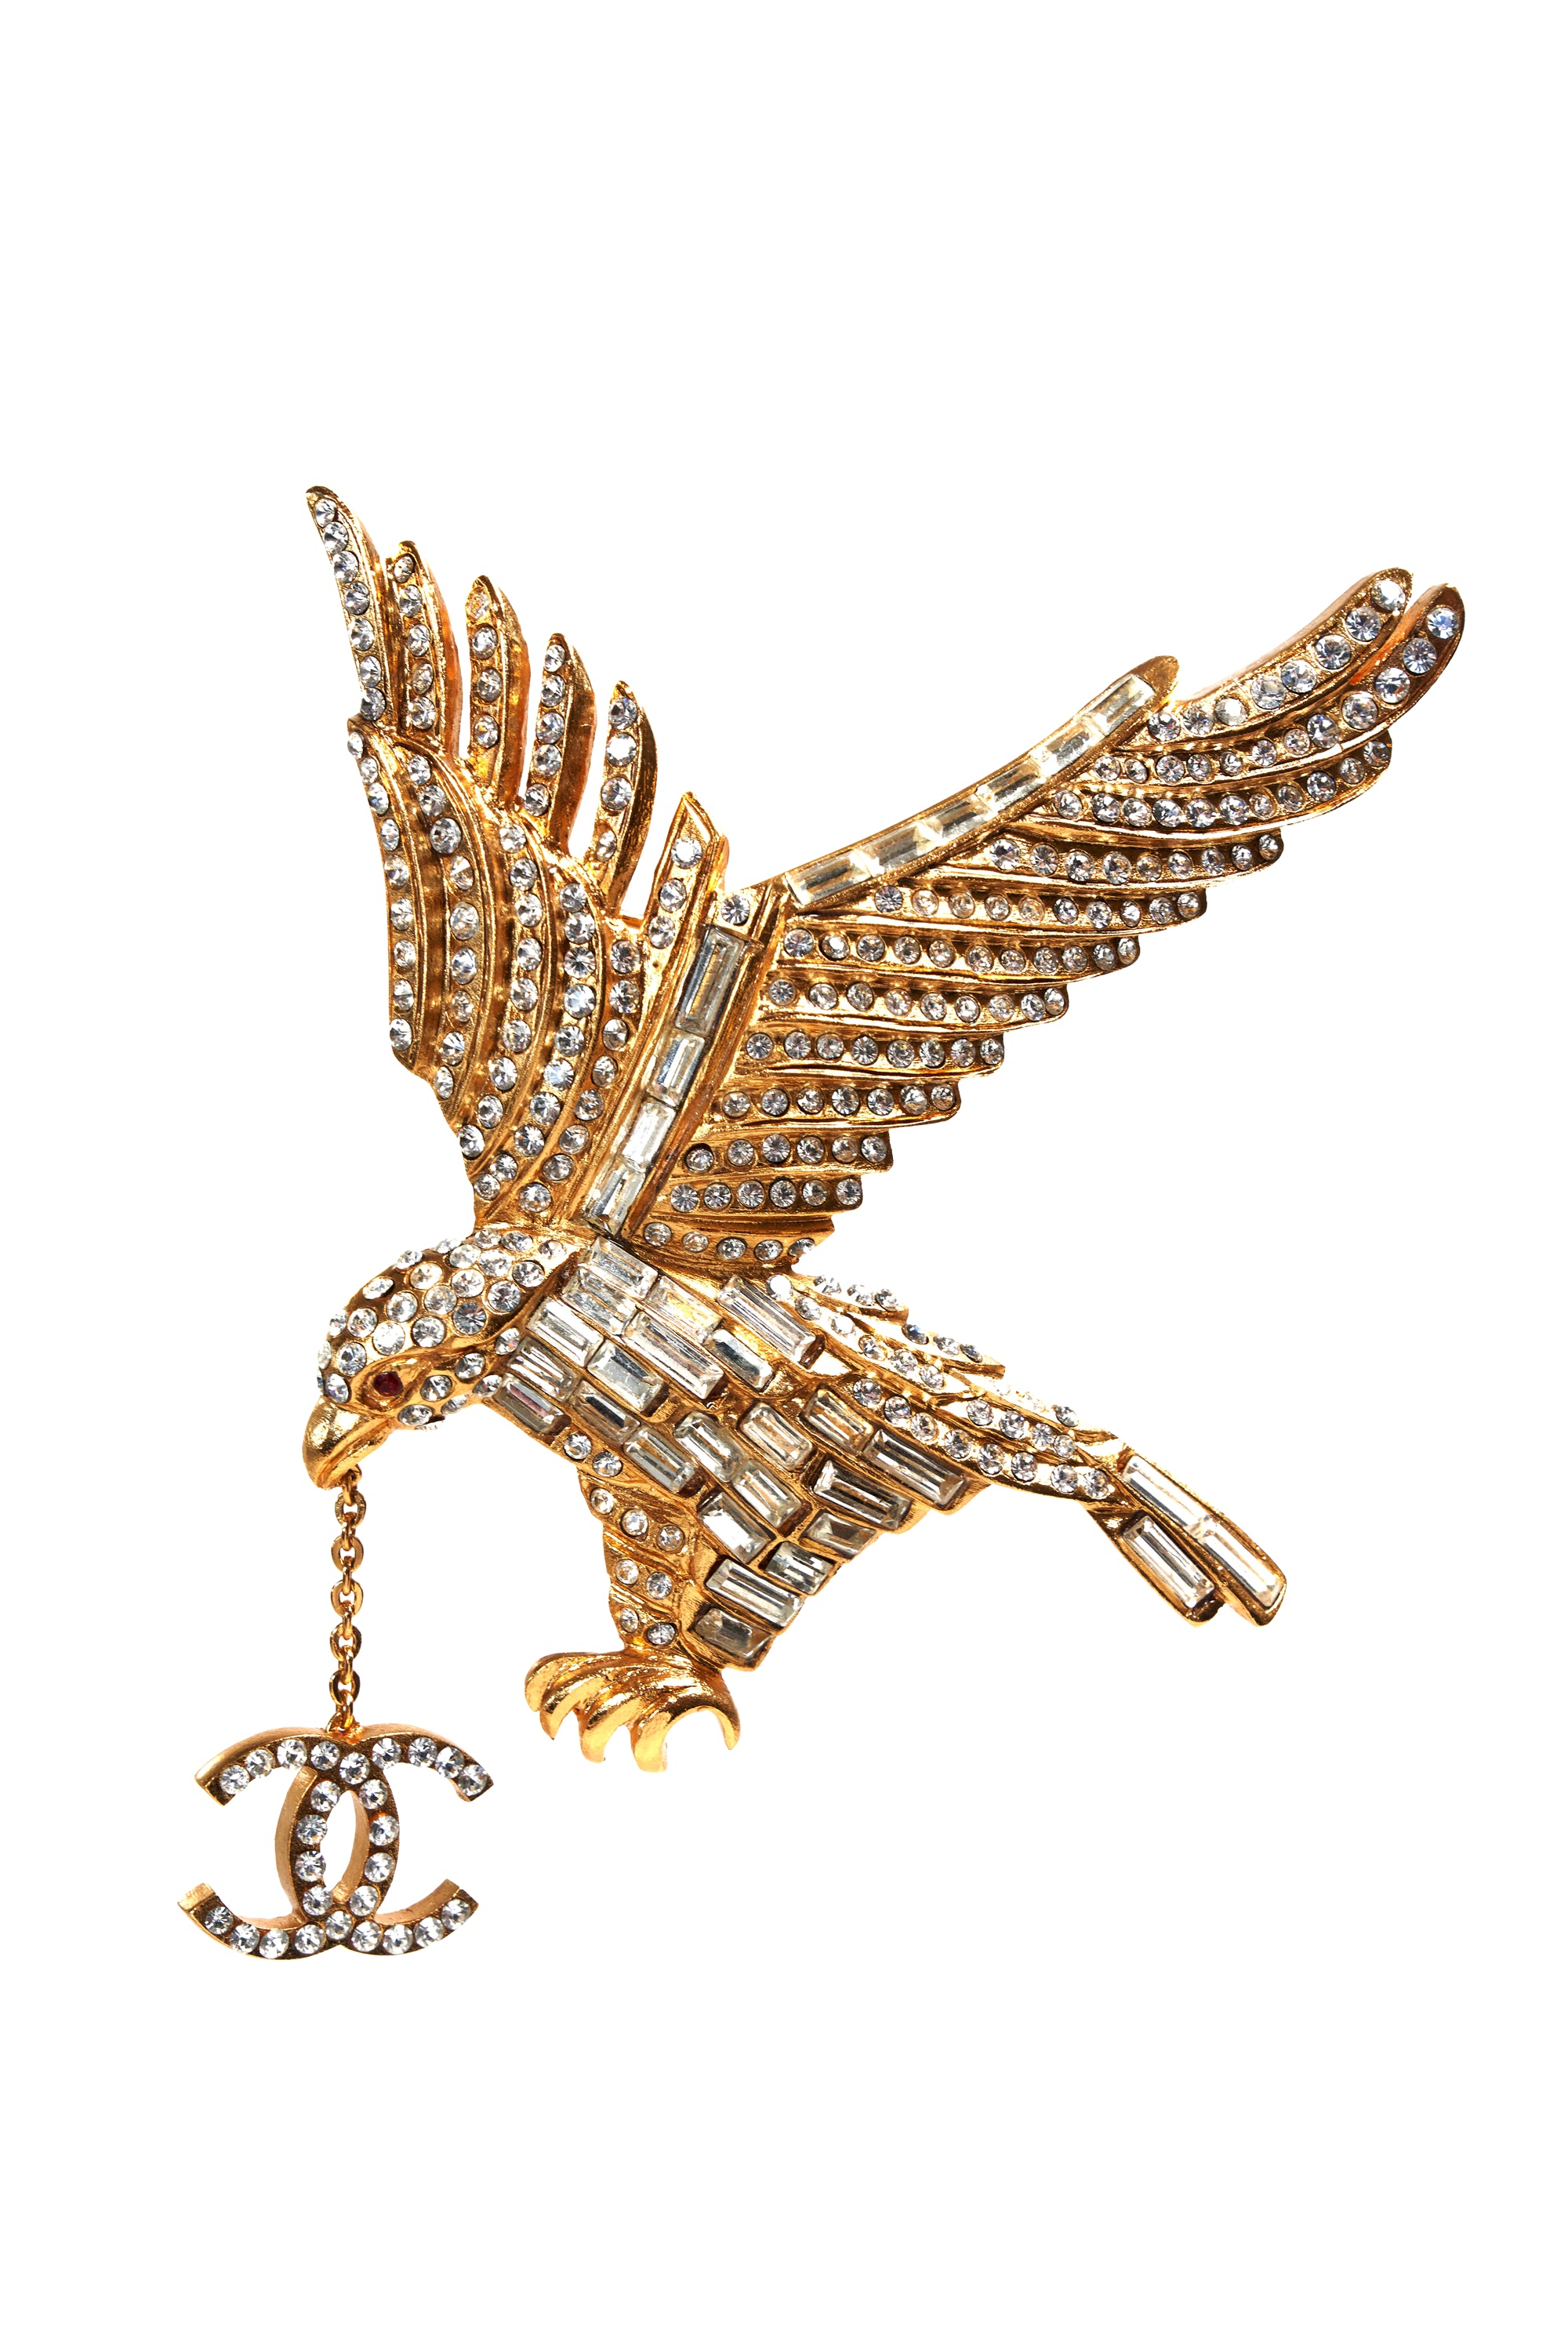 Chanel Vintage 24k Gold Crystal Eagle Brooch 2001P